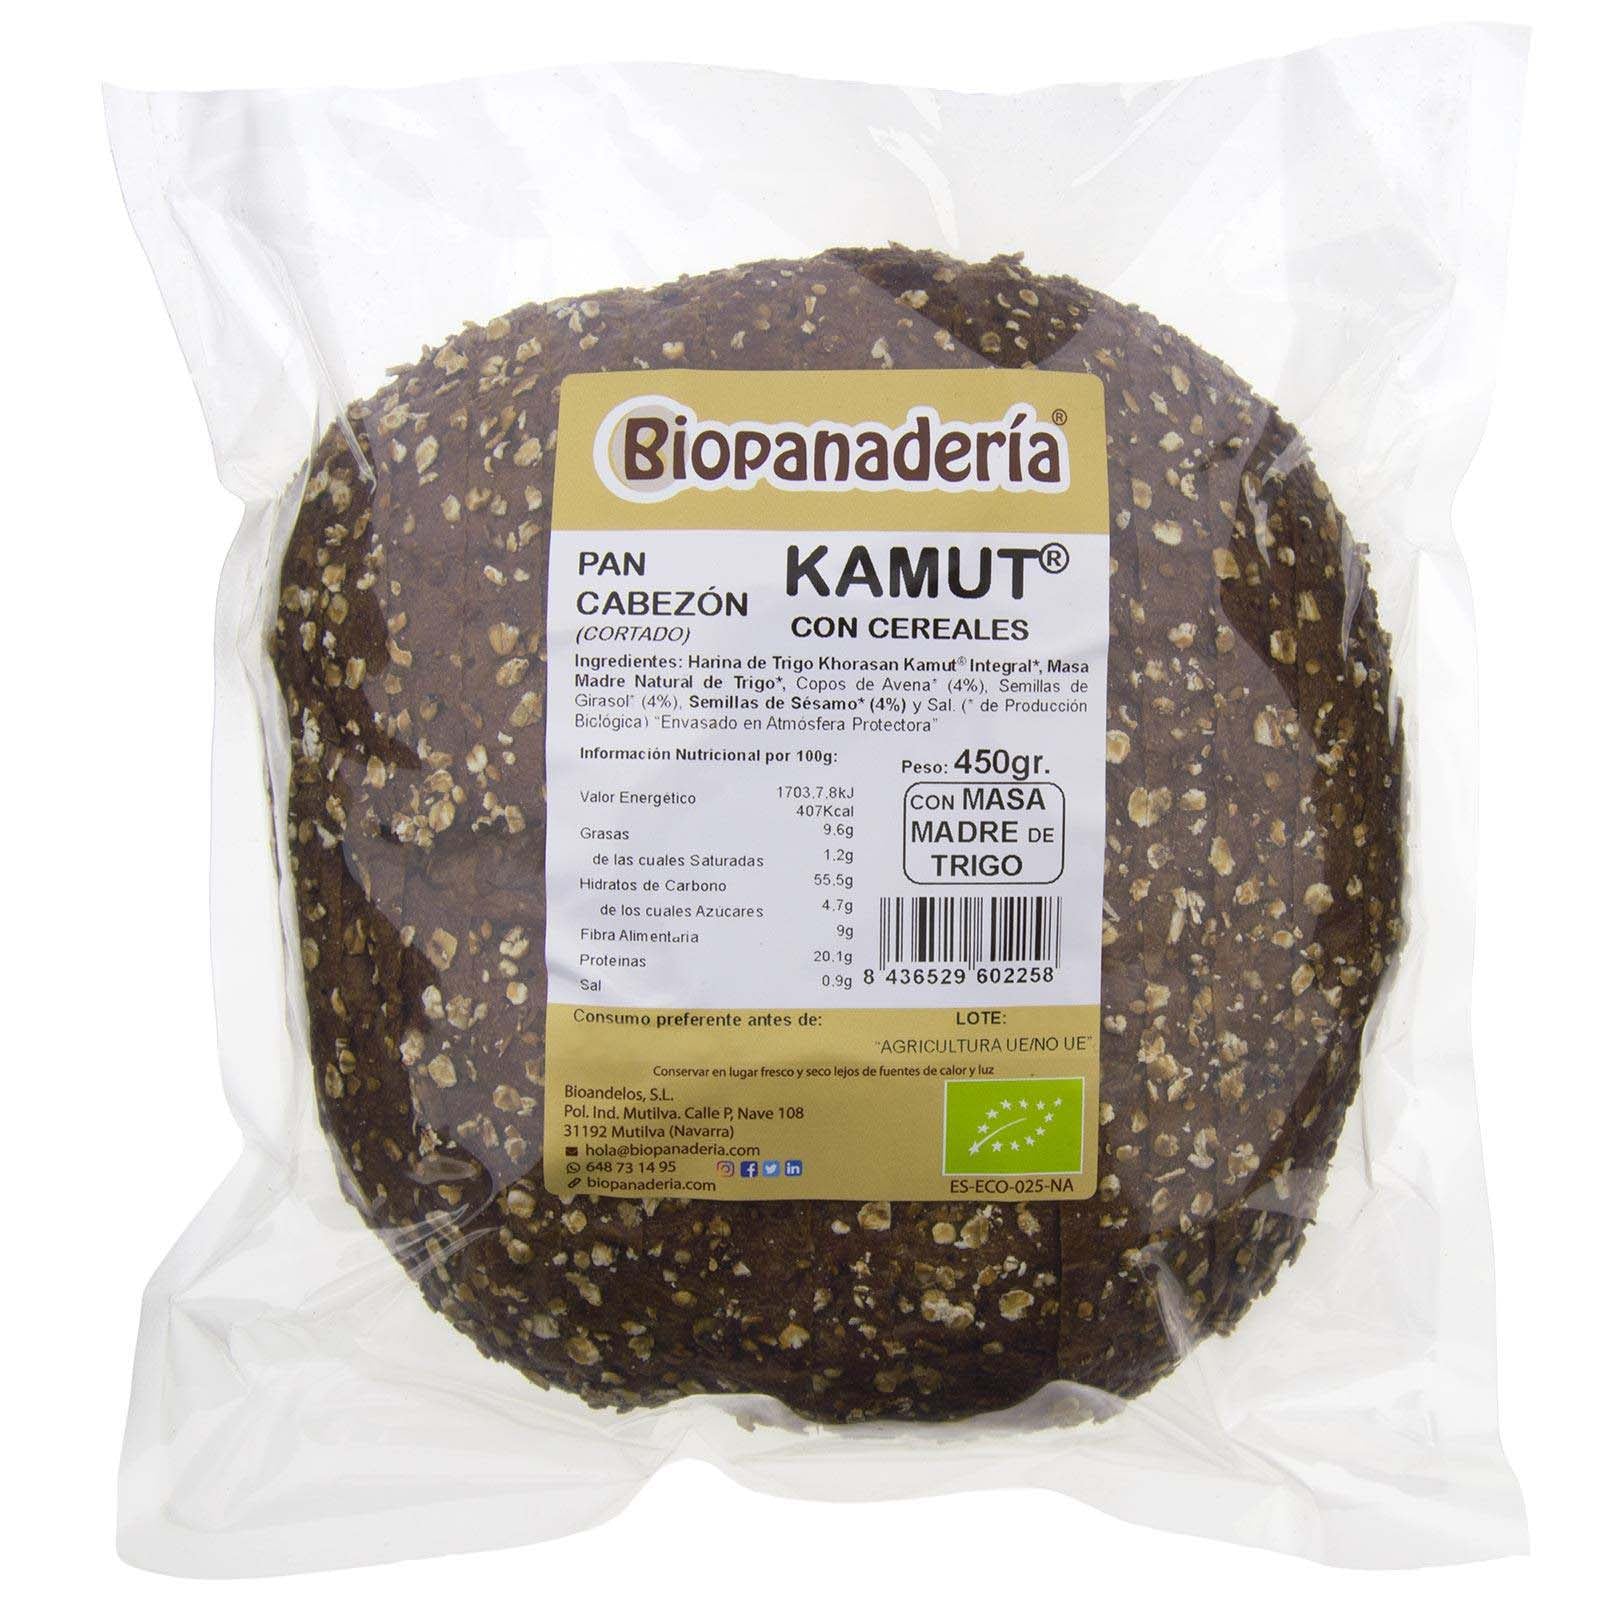 Blé Cabezon Khorasan Kamut® Integral avec des céréales de 450g (non coupées)